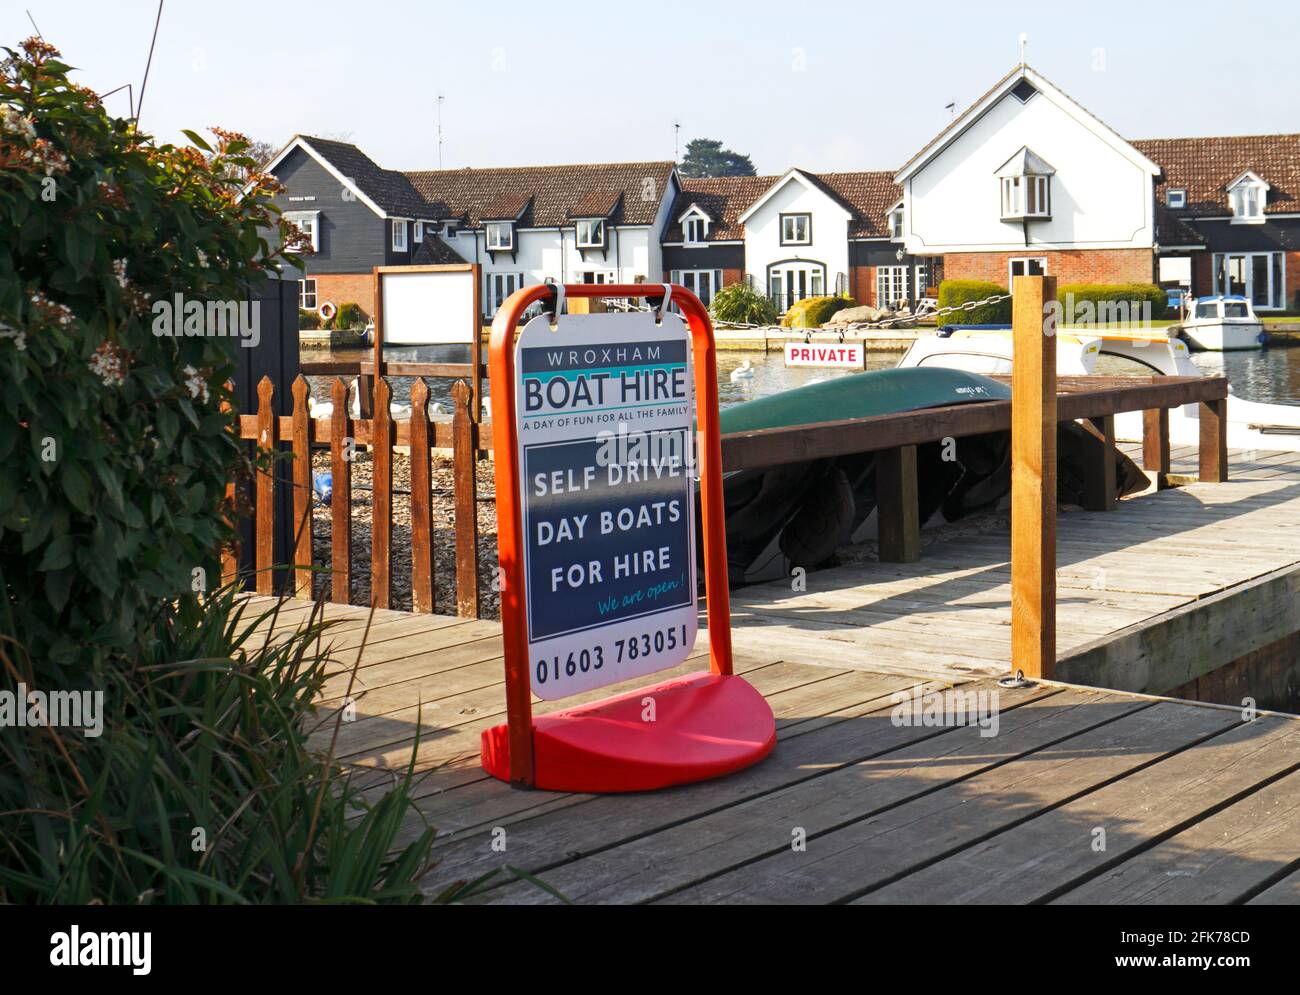 Ein Schild für Wroxham Boat Hire für Selbstfahrts-Tagesboote am Fluss Bure in Hoveton, Norfolk, England, Vereinigtes Königreich. Stockfoto